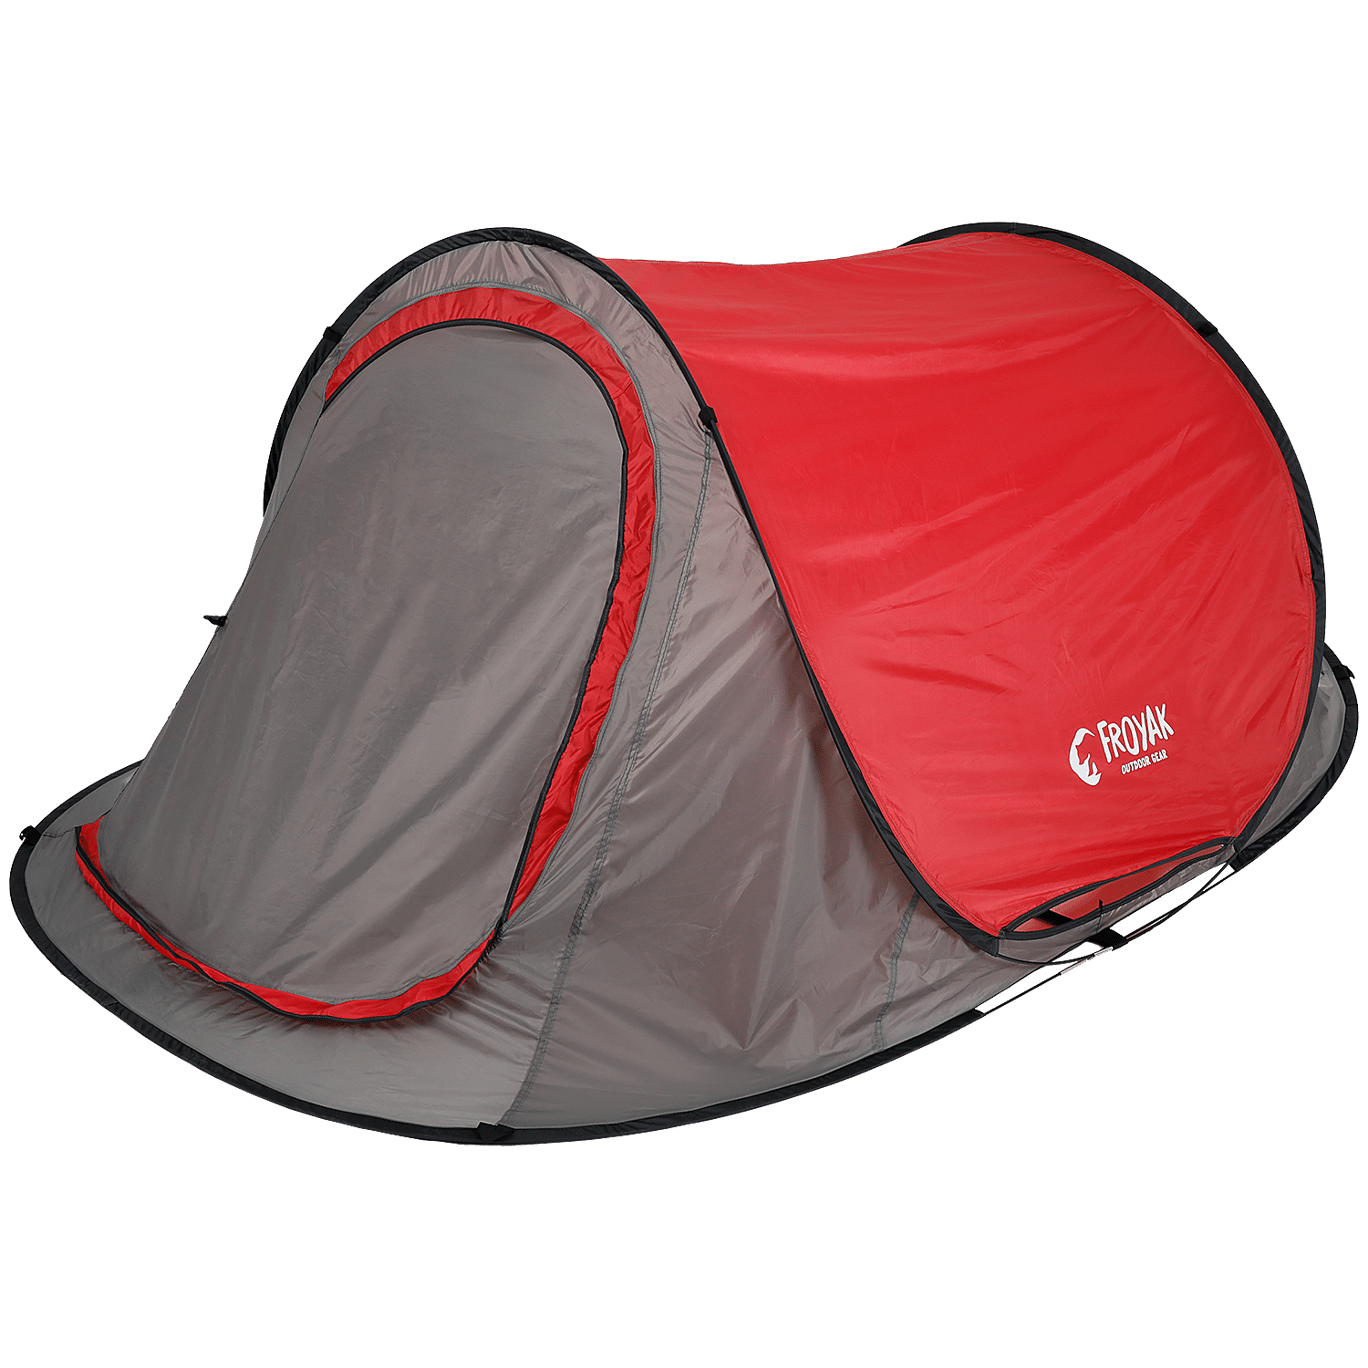 Definitie tint Springplank Froyak pop-up tent | Action.com